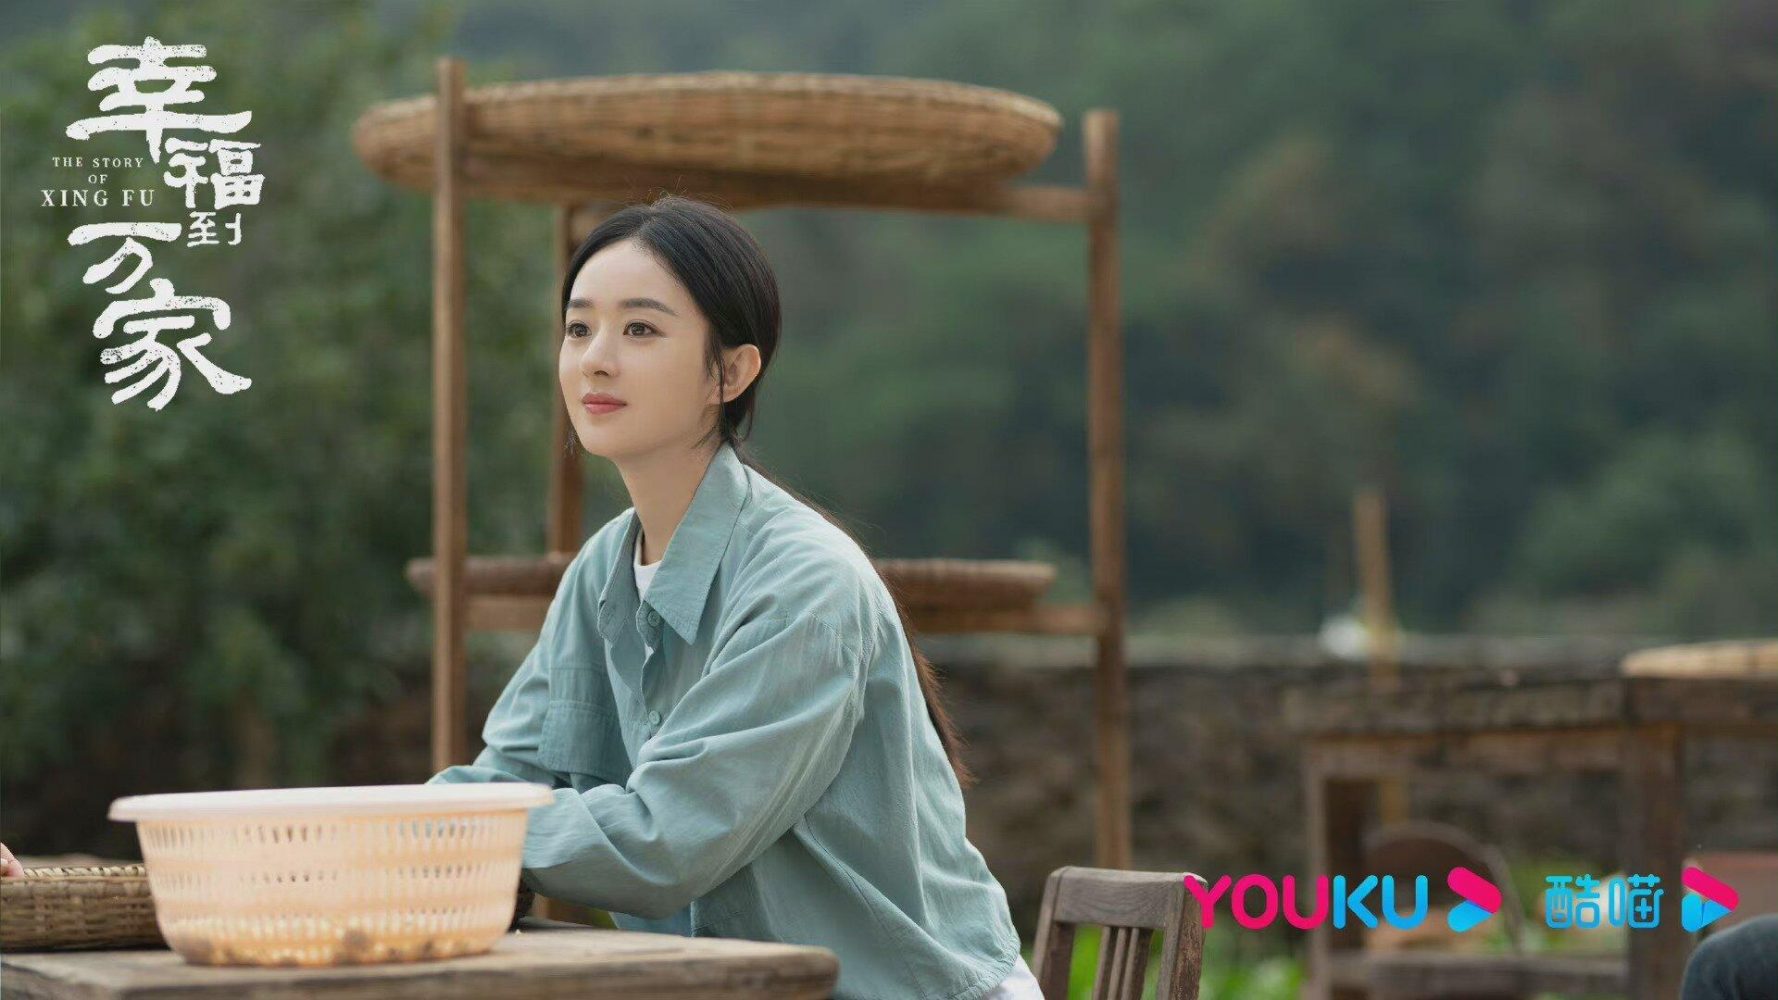 Phim mới mẻ của Triệu Lệ Dĩnh: Hạnh Phúc cho tới Vạn Gia - The Story Of Xing Fu (2022)